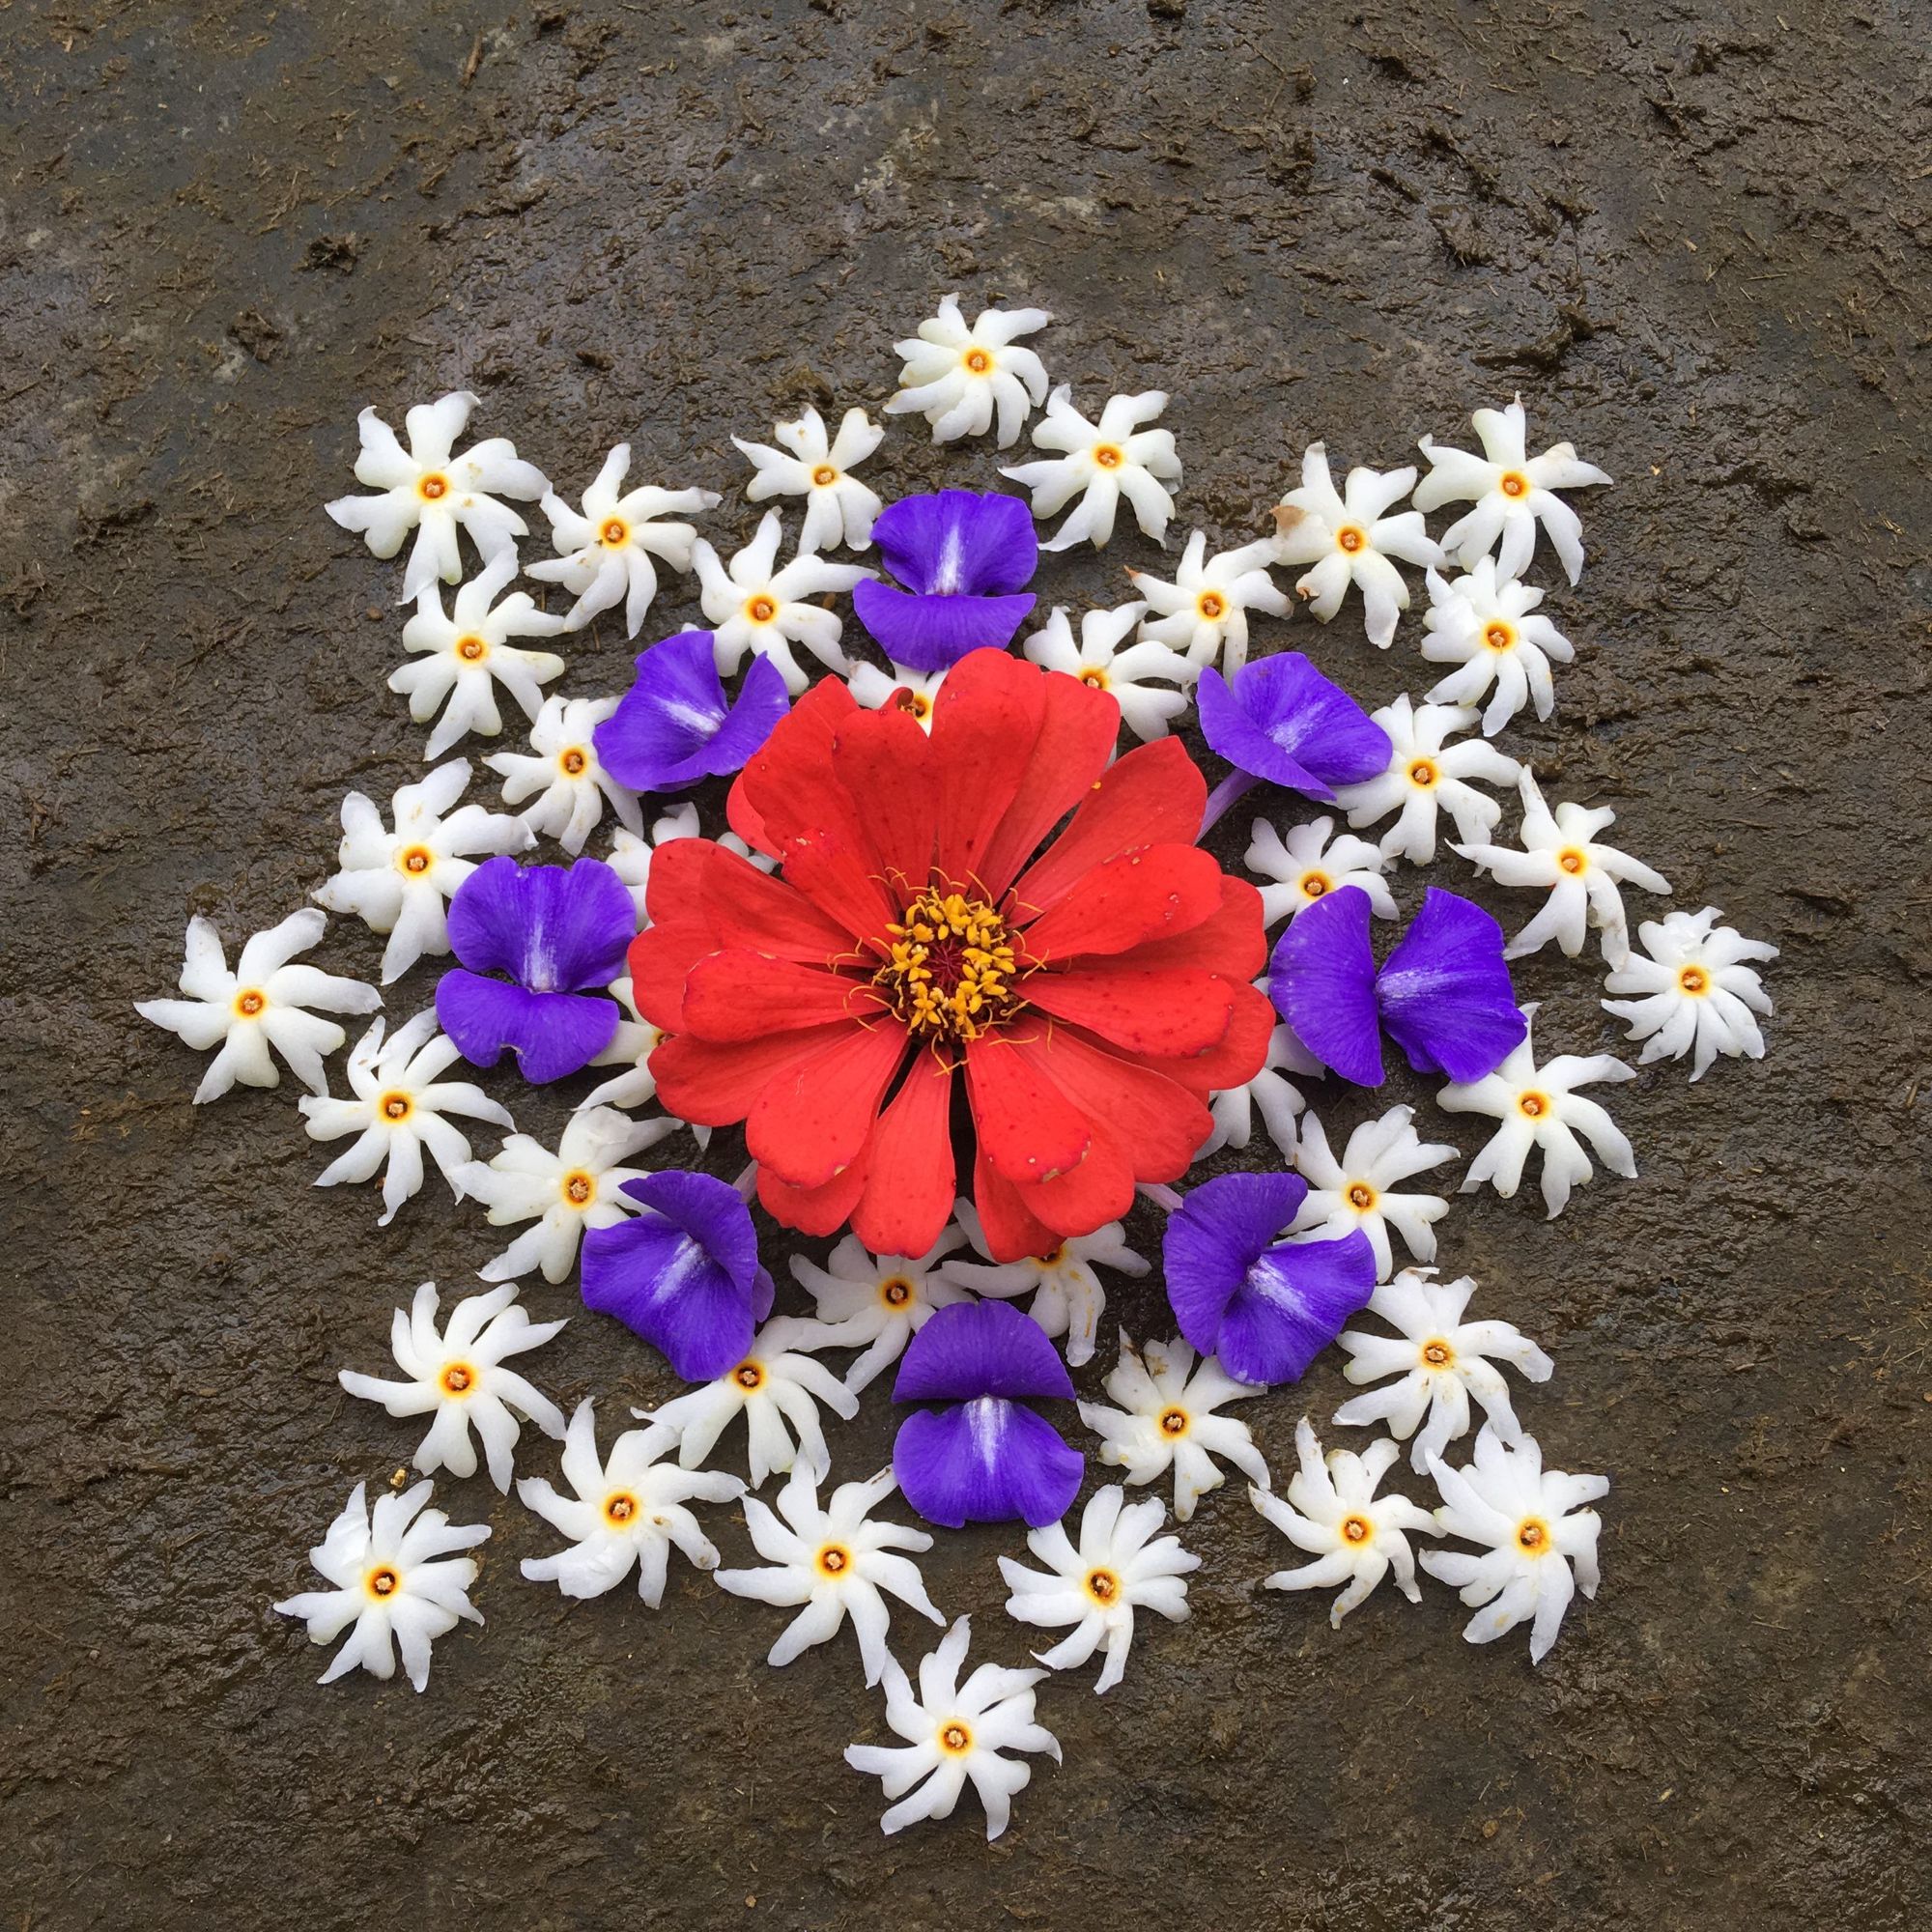 Des tapis de fleurs pour célébrer Onam — partie 2